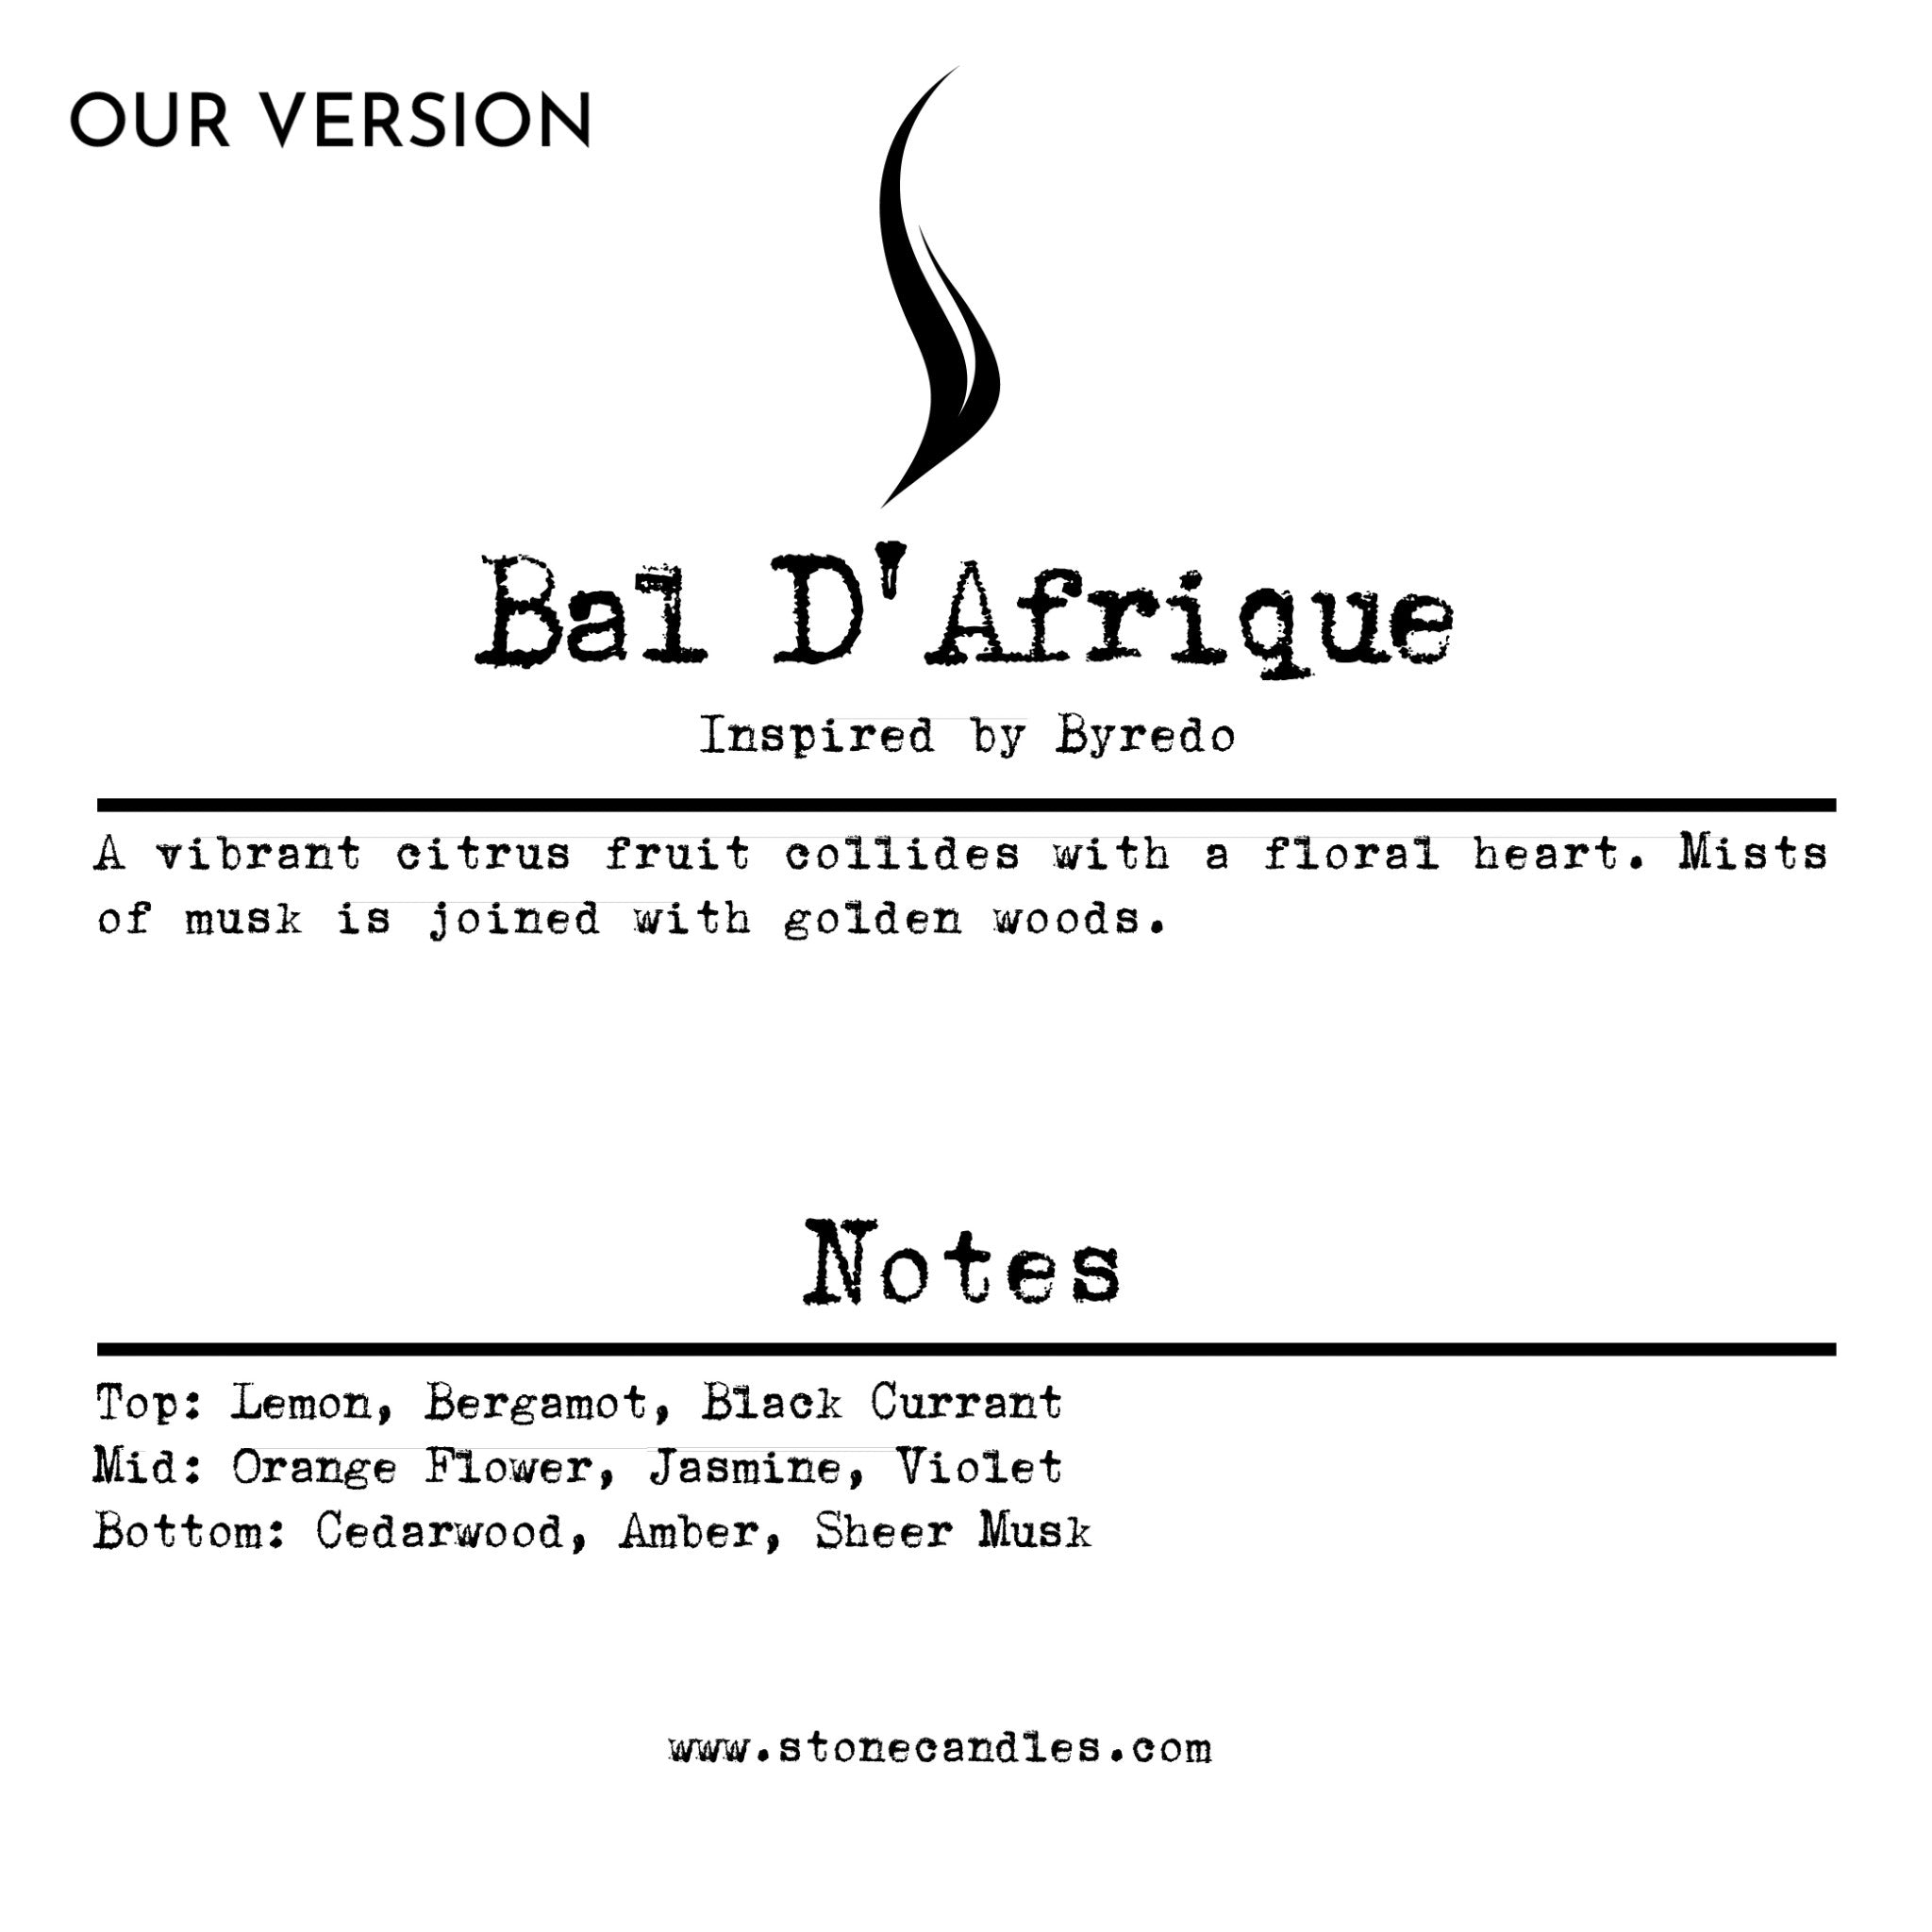 Bal D'Afrique (our version) Sample Scent Strip